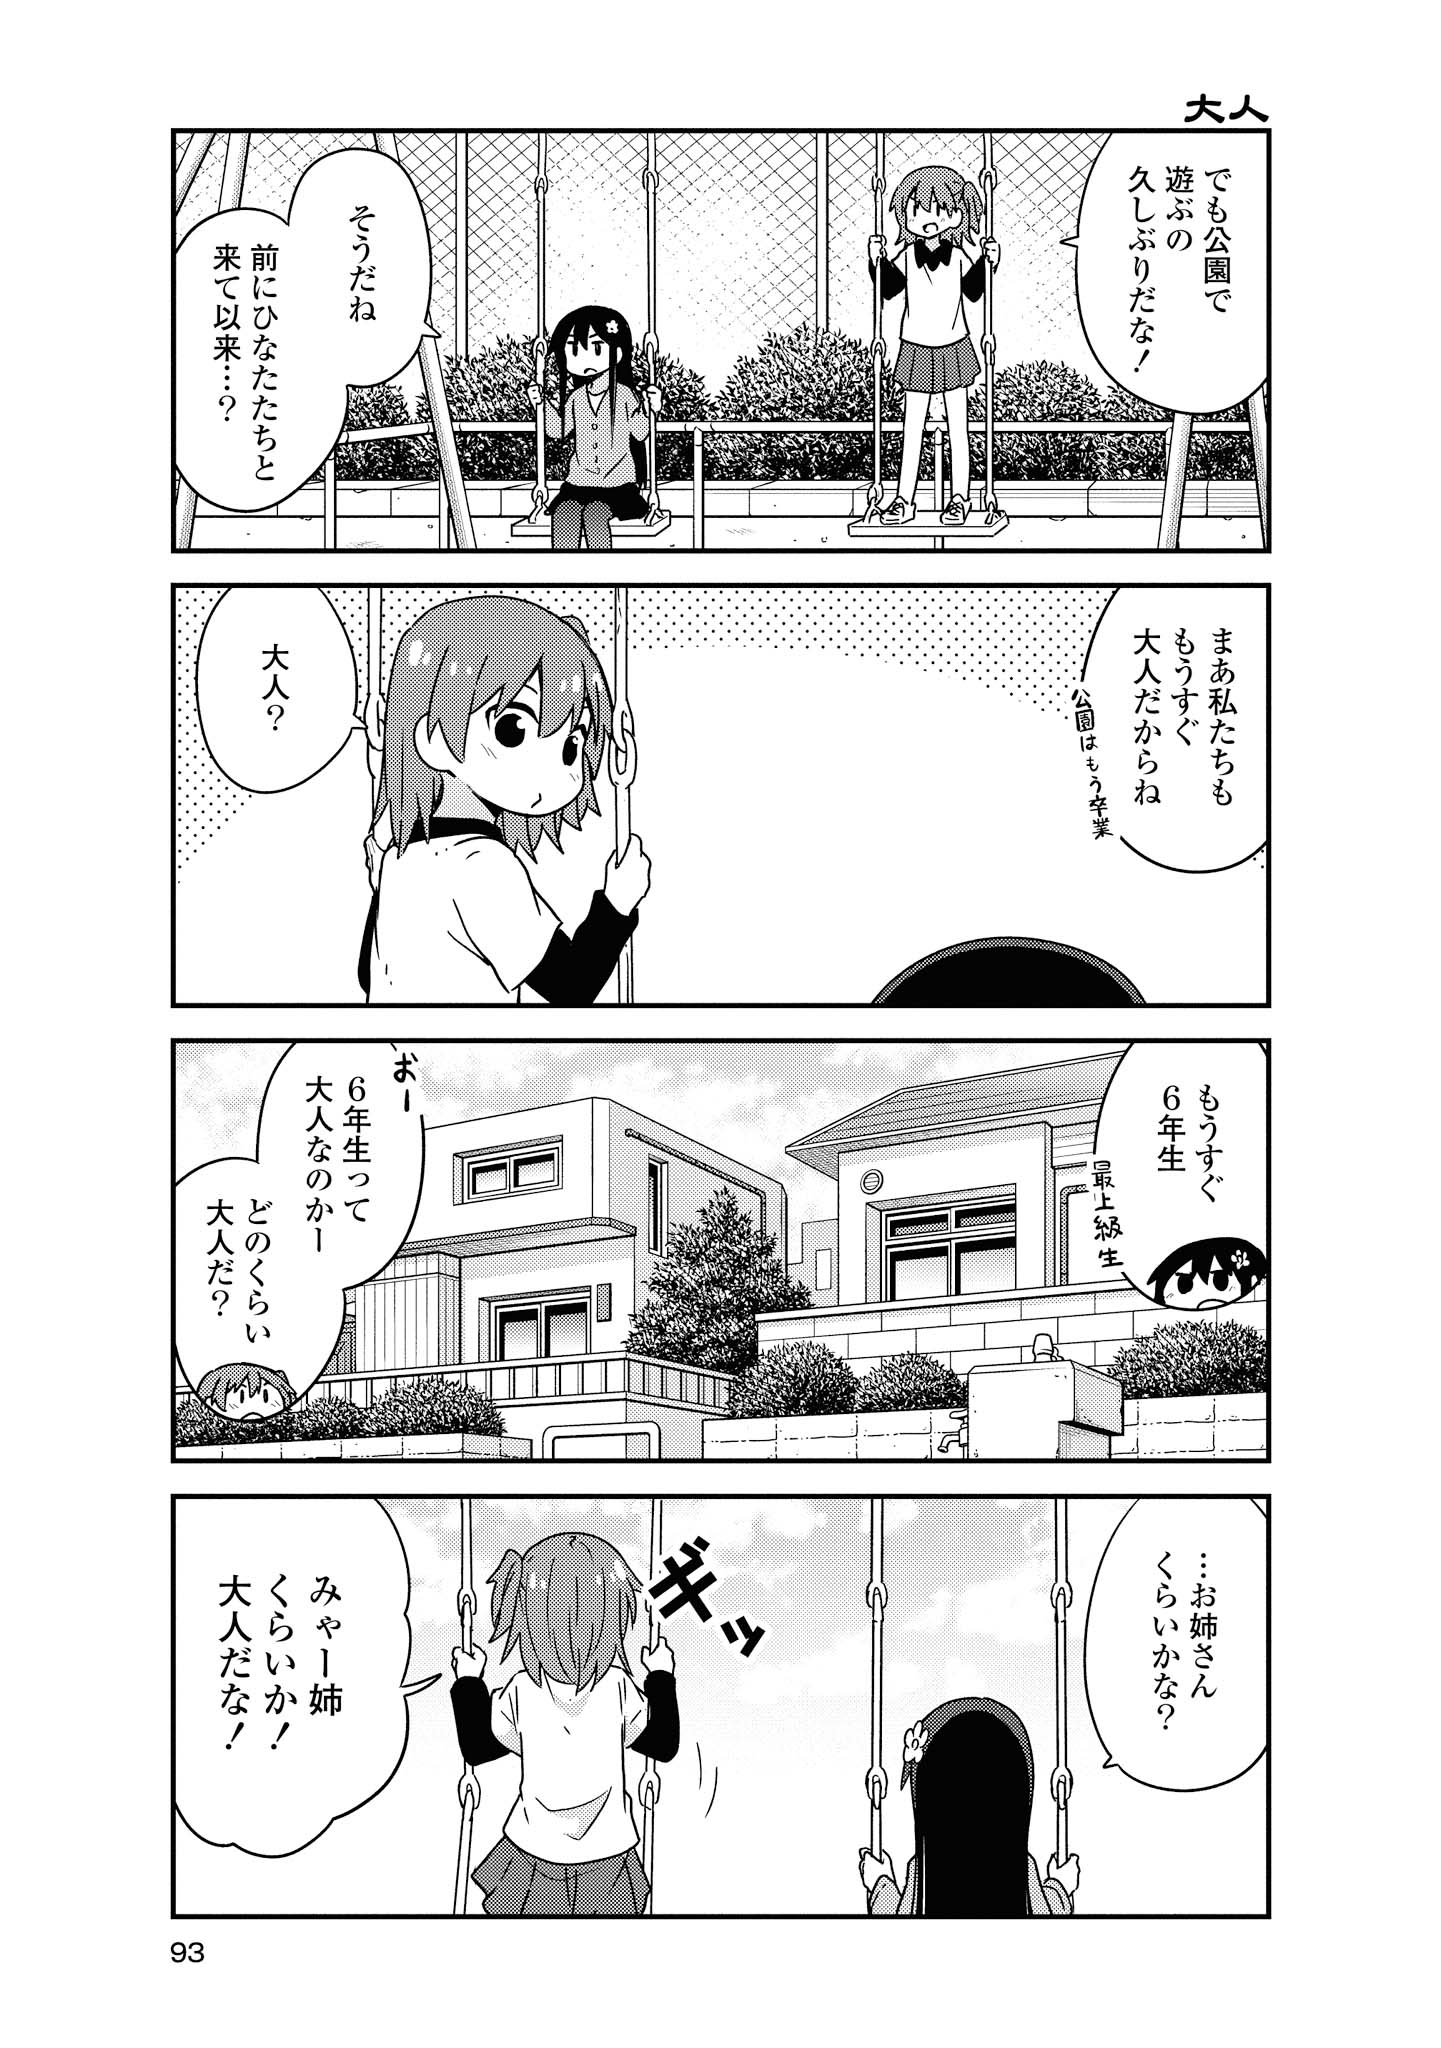 Watashi ni Tenshi ga Maiorita! - Chapter 49 - Page 5